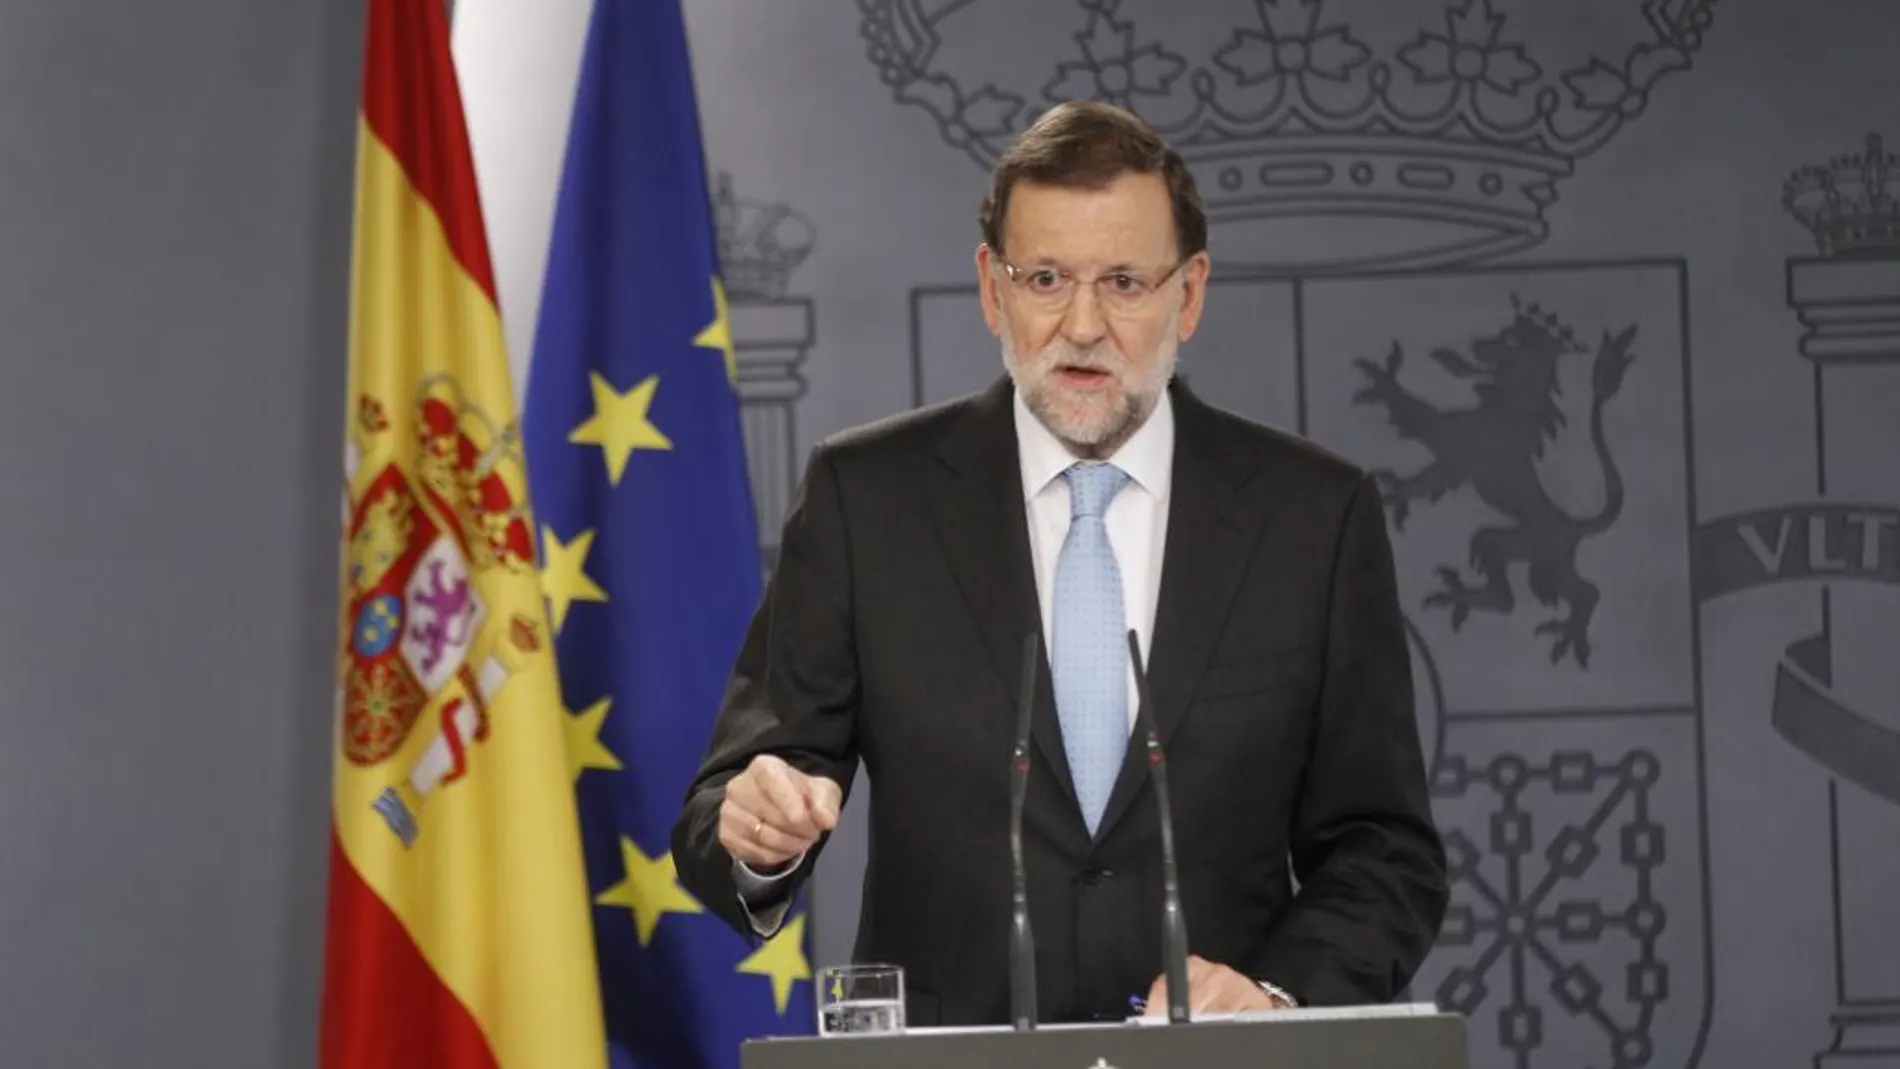 El presidente del Gobierno, Mariano Rajoy, durante la rueda de prensa celebrada hoy en La Moncloa